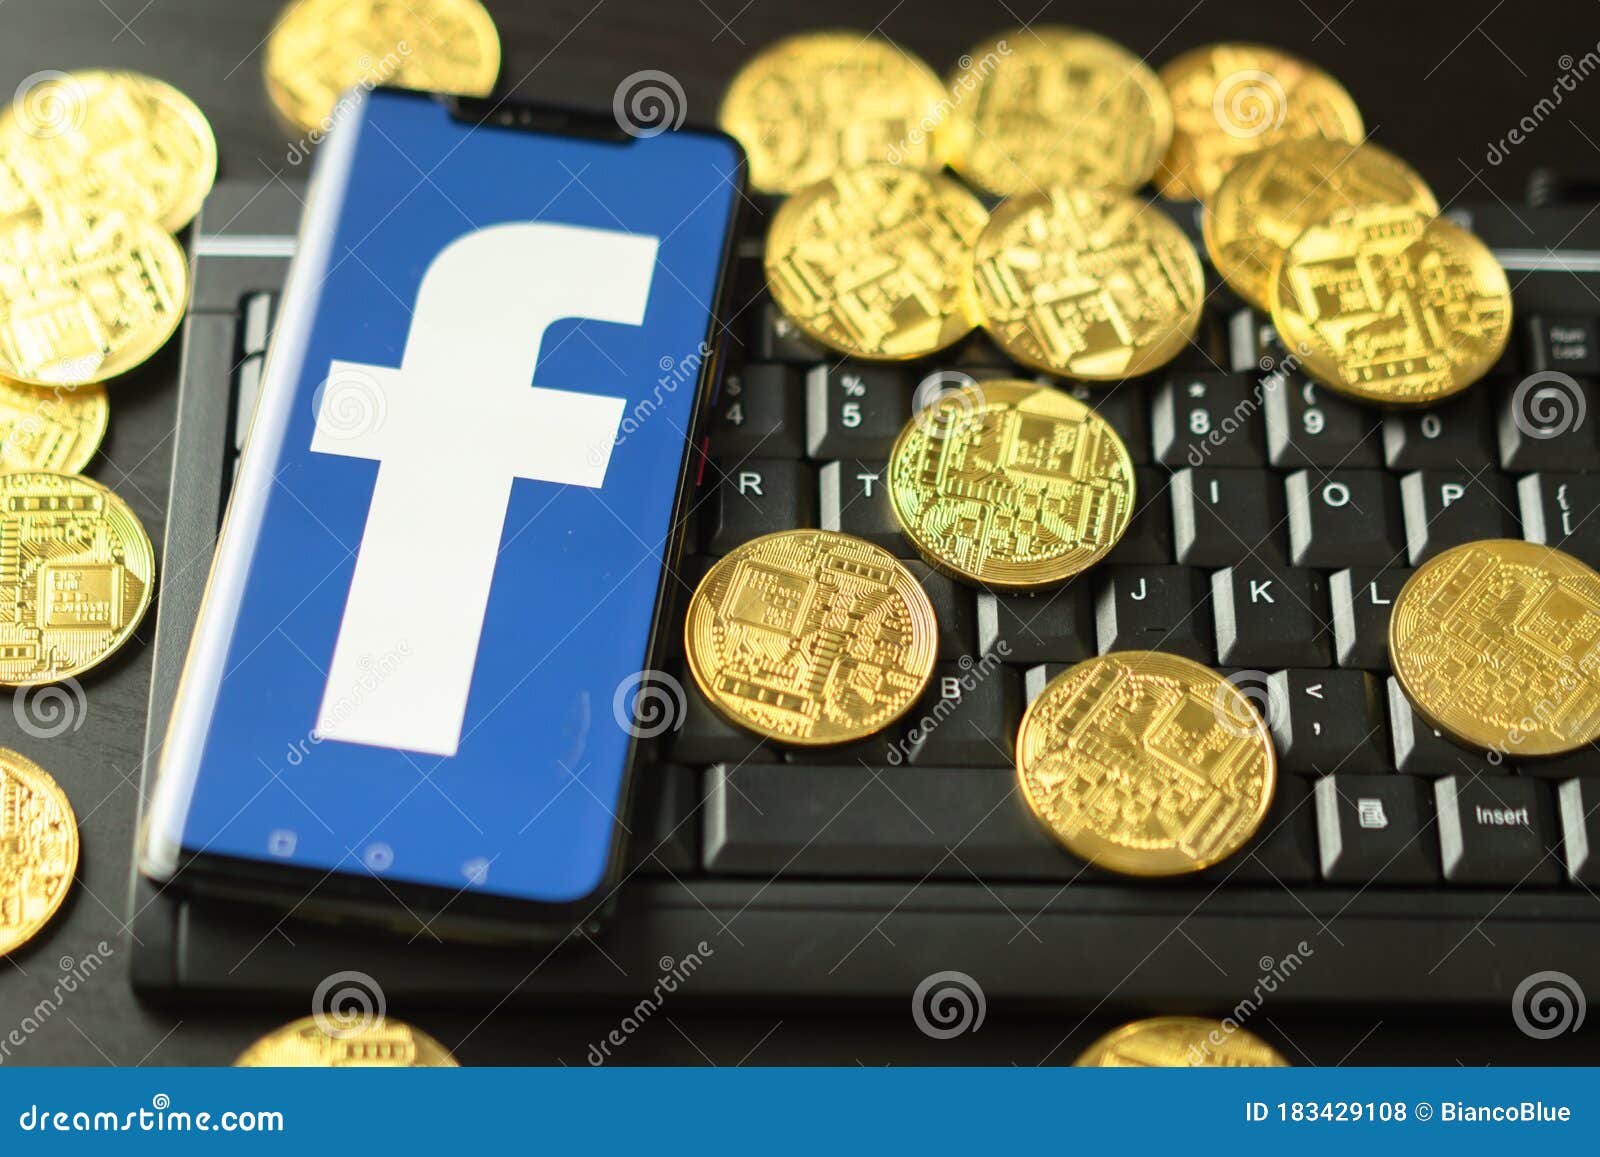 bitcoin thai market facebook bitcoin poloniex